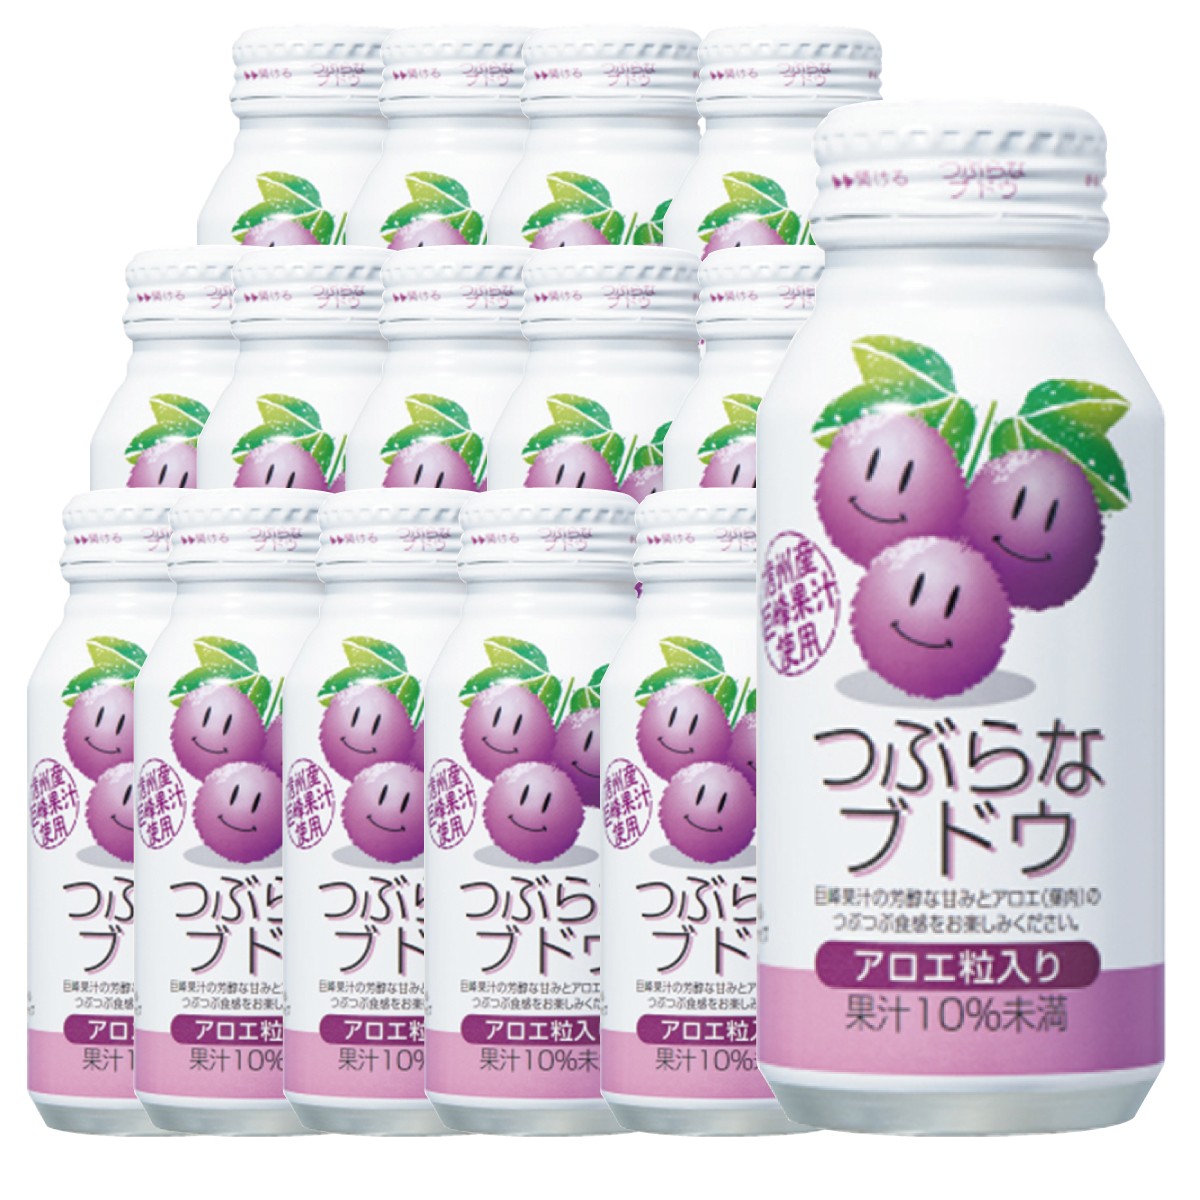 JAフーズおおいた つぶらなブドウ ボトル缶 190g×15 つぶらな フルーツジュースの商品画像